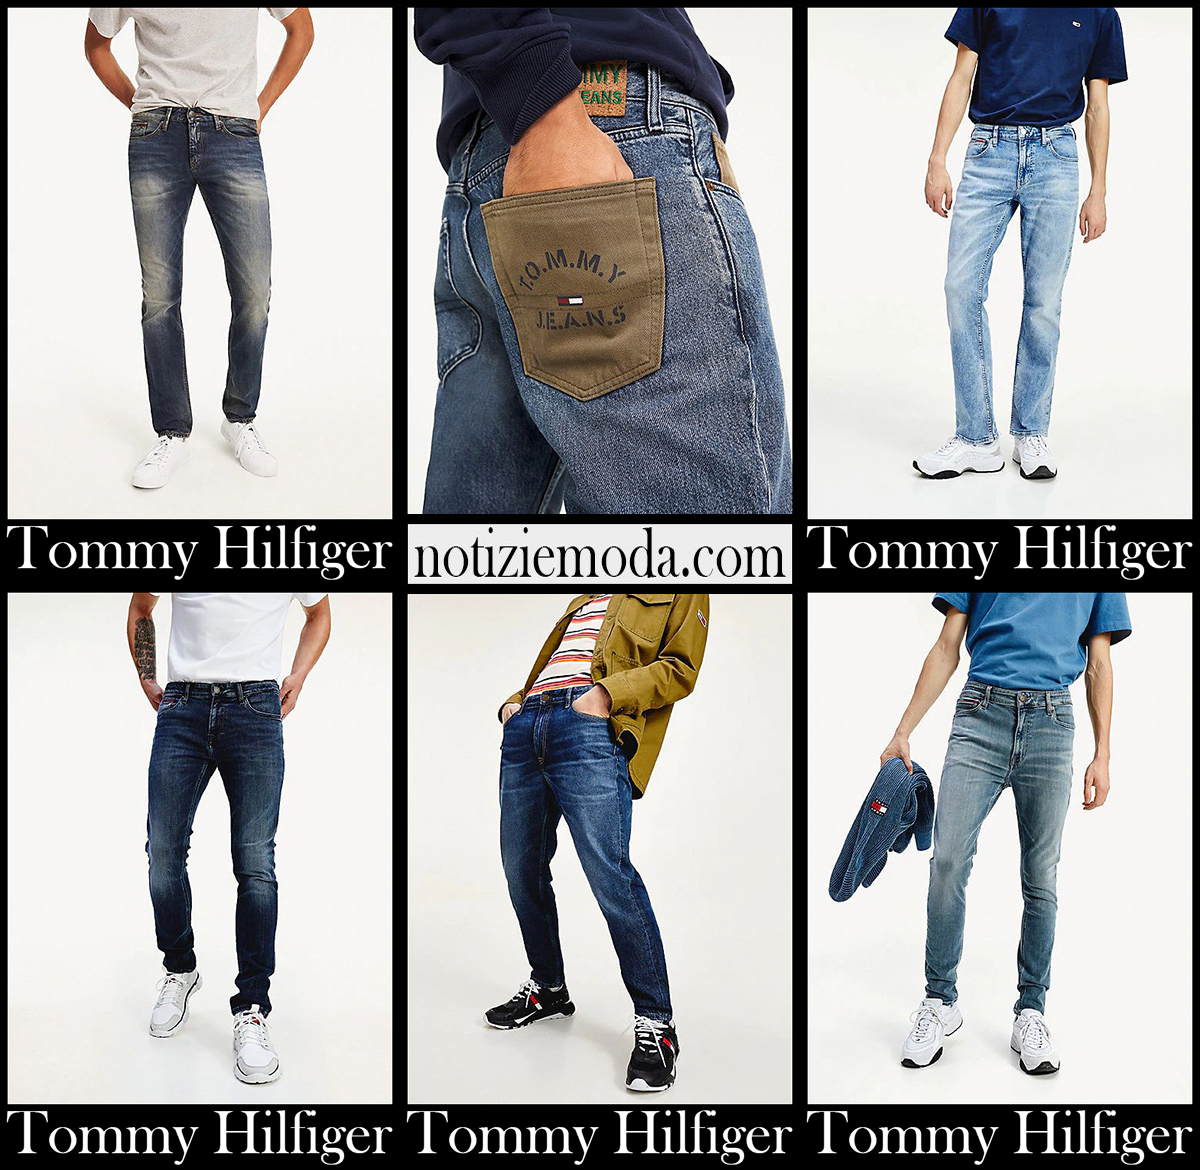 Jeans Tommy Hilfiger 2020 21 collezione denim uomo